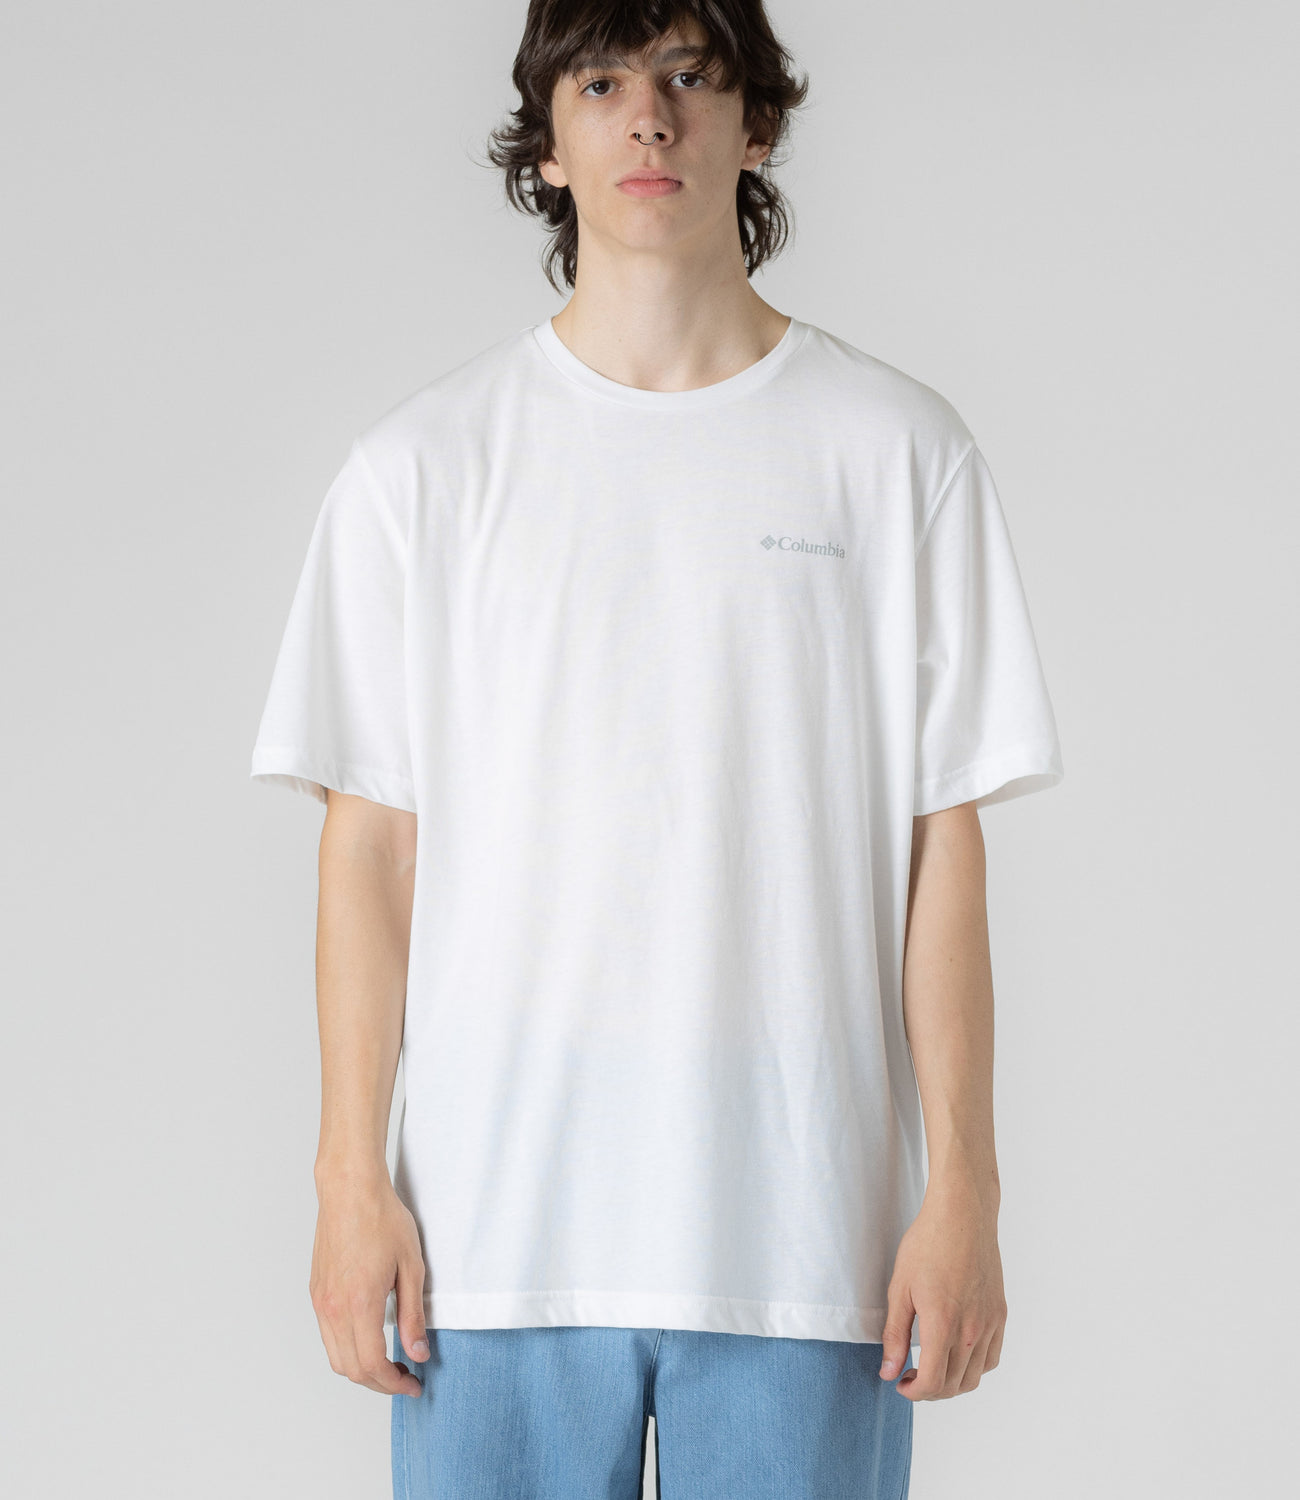 Columbia Thistletown Hills T-Shirt - White | Flatspot